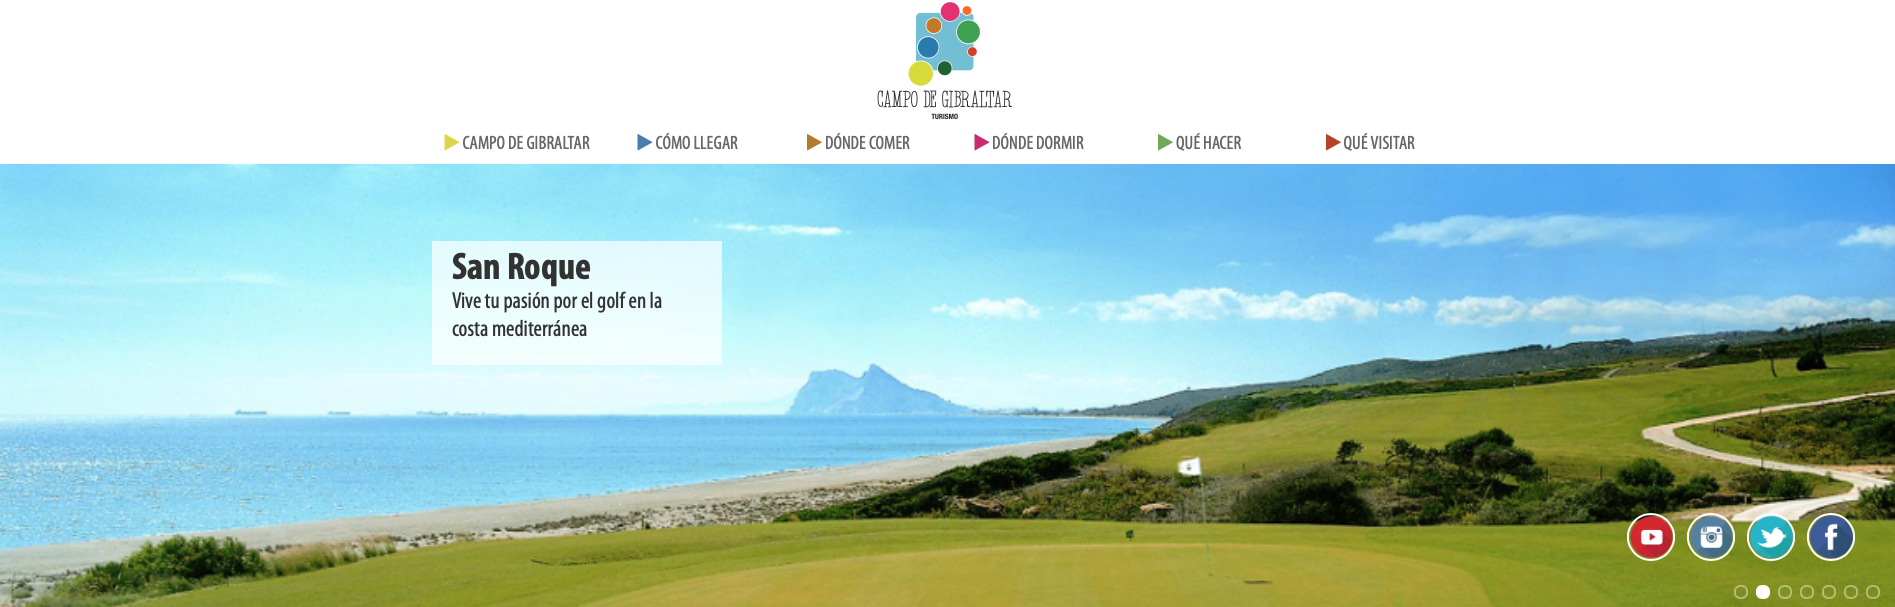 captura de la web de turismo del Campo de Gibraltar